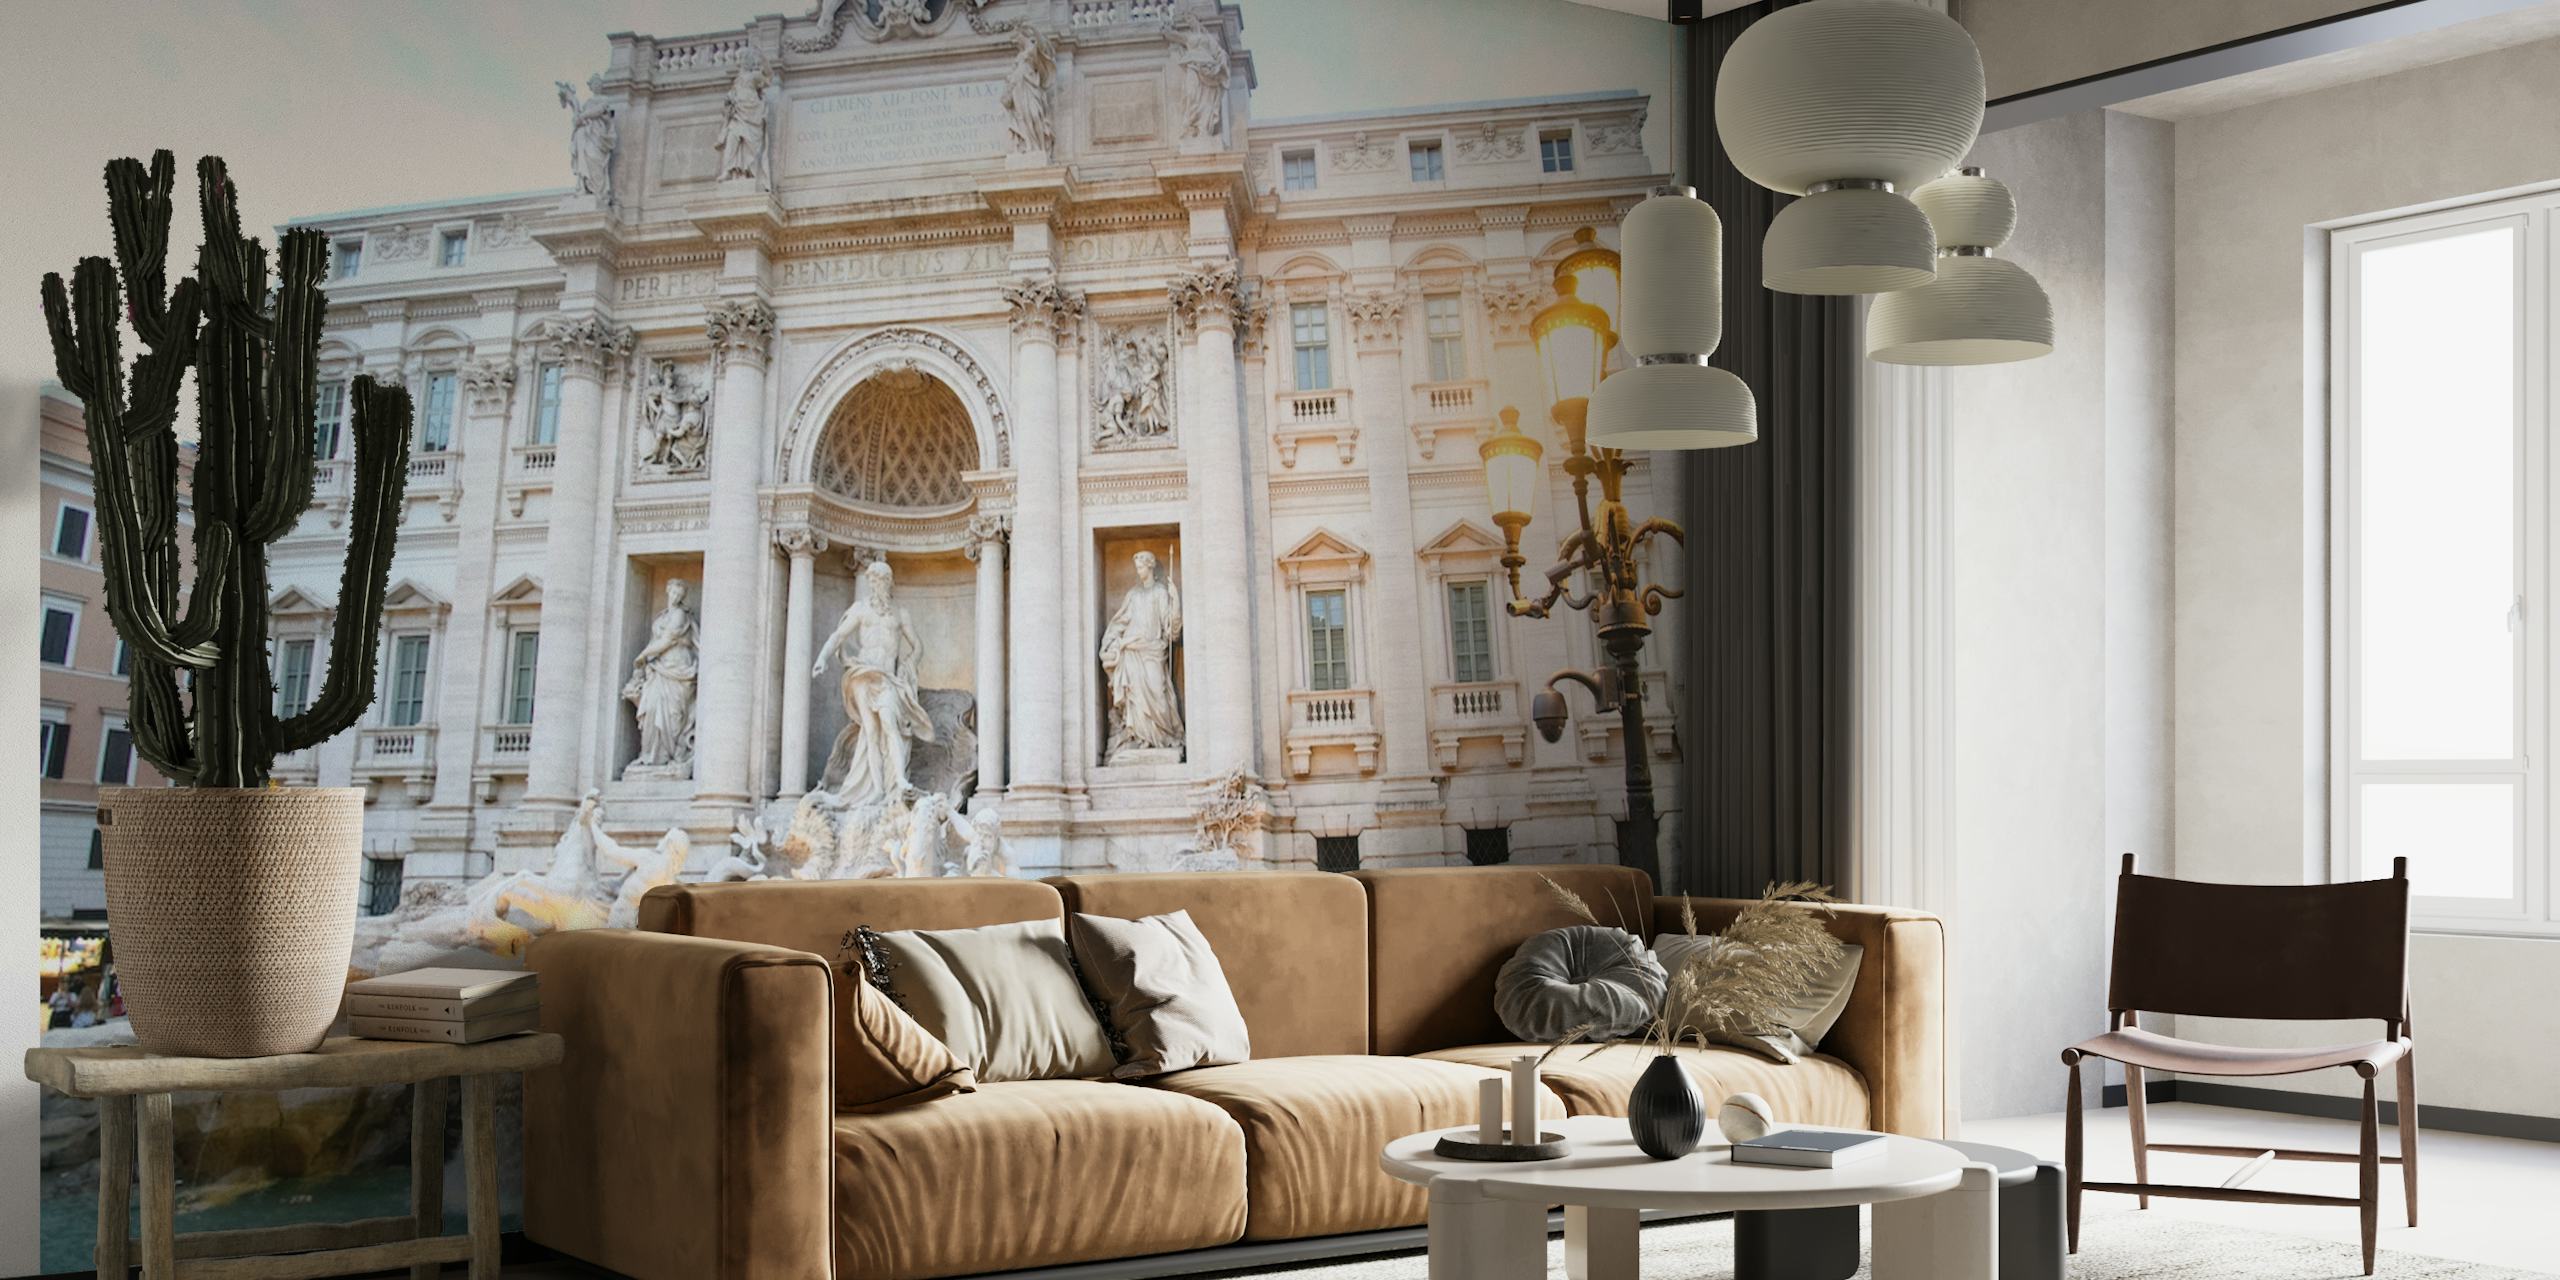 Wandgemälde des Trevi-Brunnens in Rom, das die kunstvolle Architektur und Skulpturen zeigt